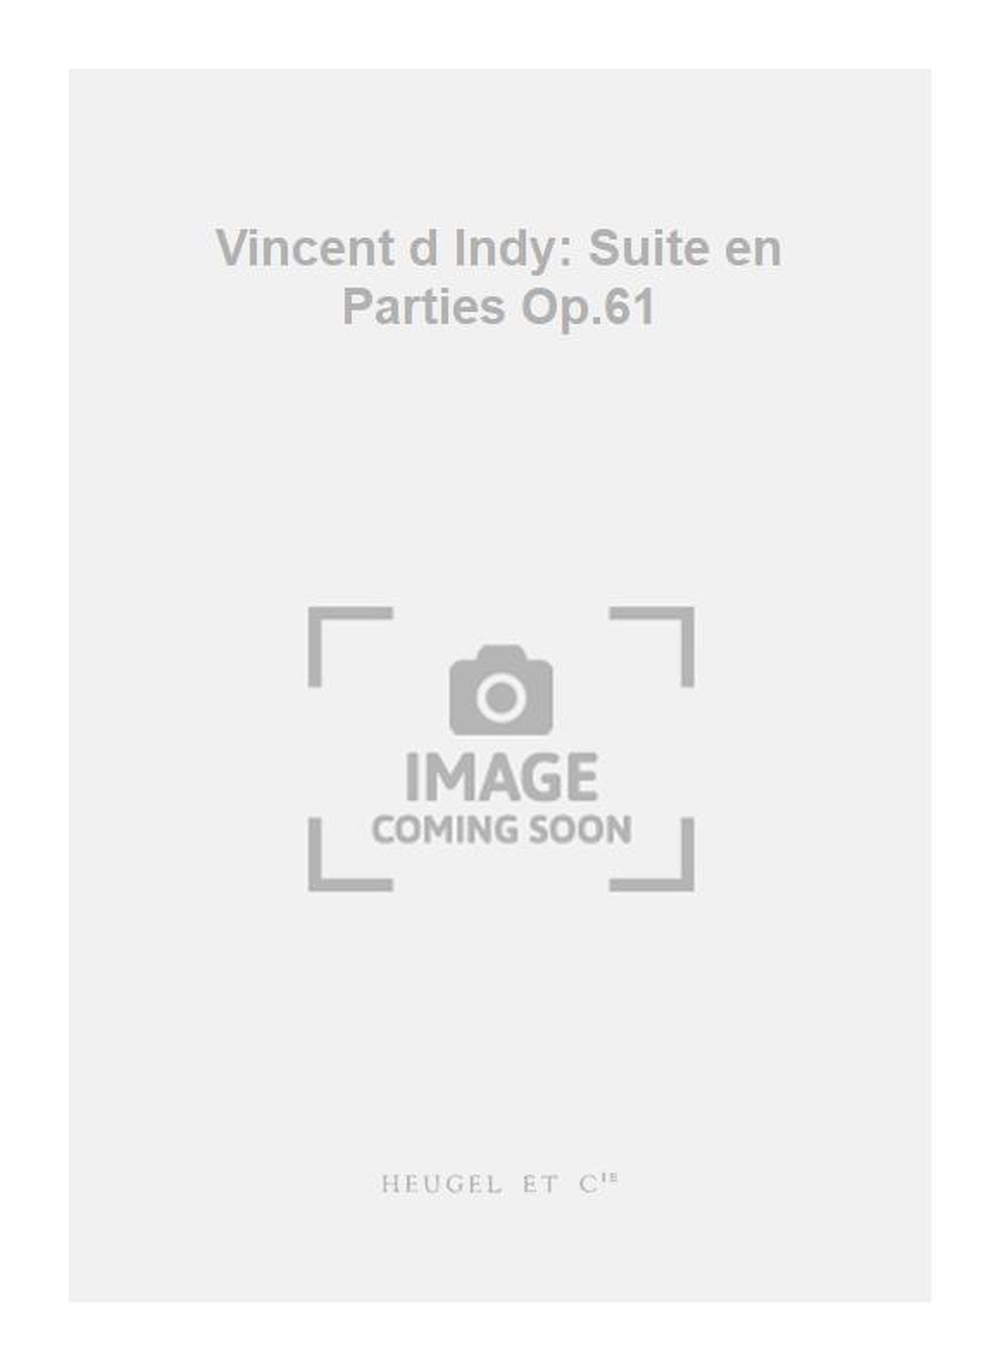 Vincent d'Indy: Vincent d Indy: Suite en Parties Op.61